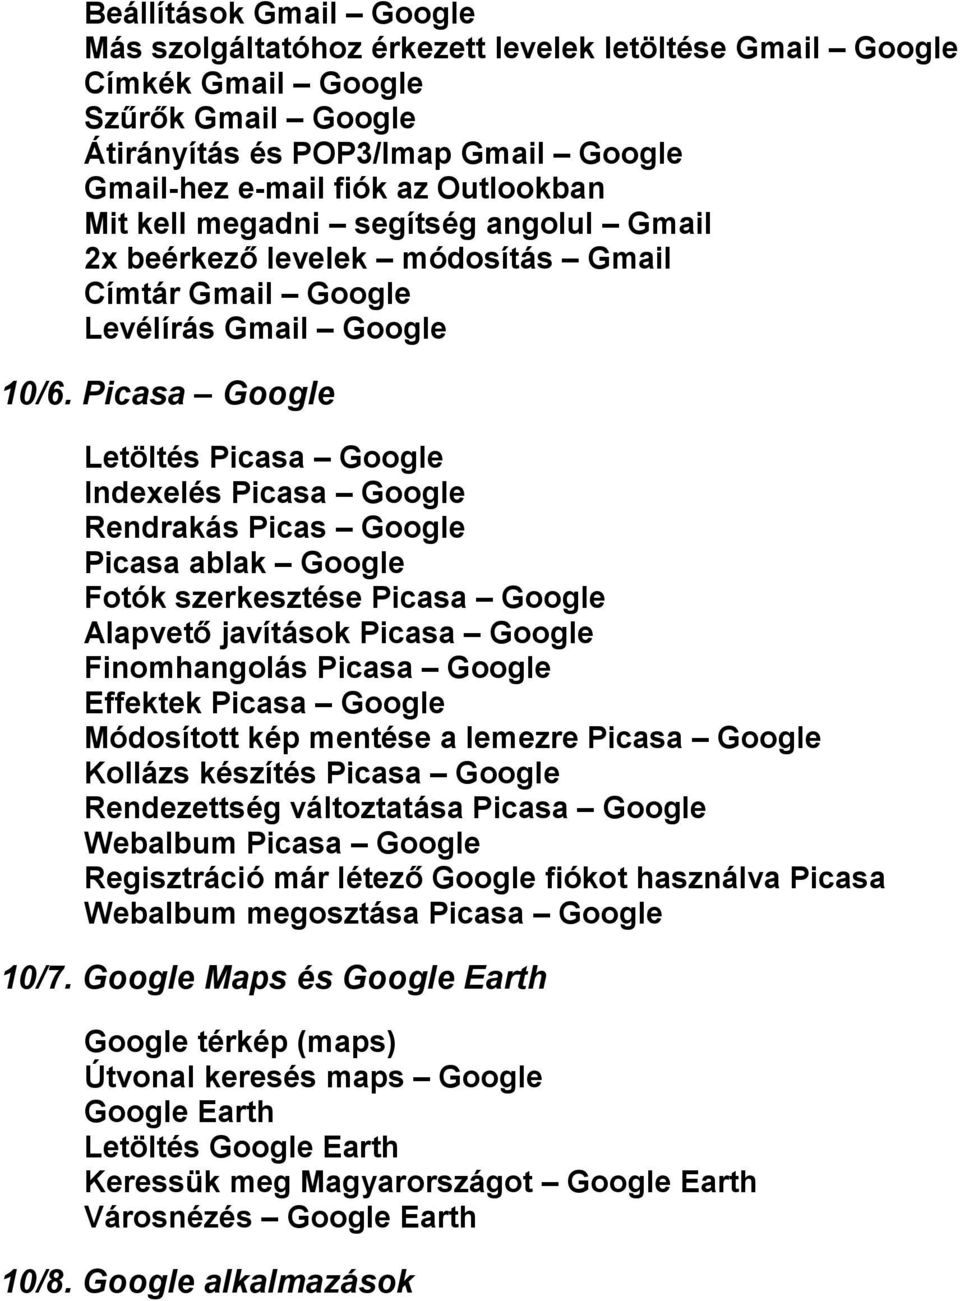 Picasa Google Letöltés Picasa Google Indexelés Picasa Google Rendrakás Picas Google Picasa ablak Google Fotók szerkesztése Picasa Google Alapvető javítások Picasa Google Finomhangolás Picasa Google